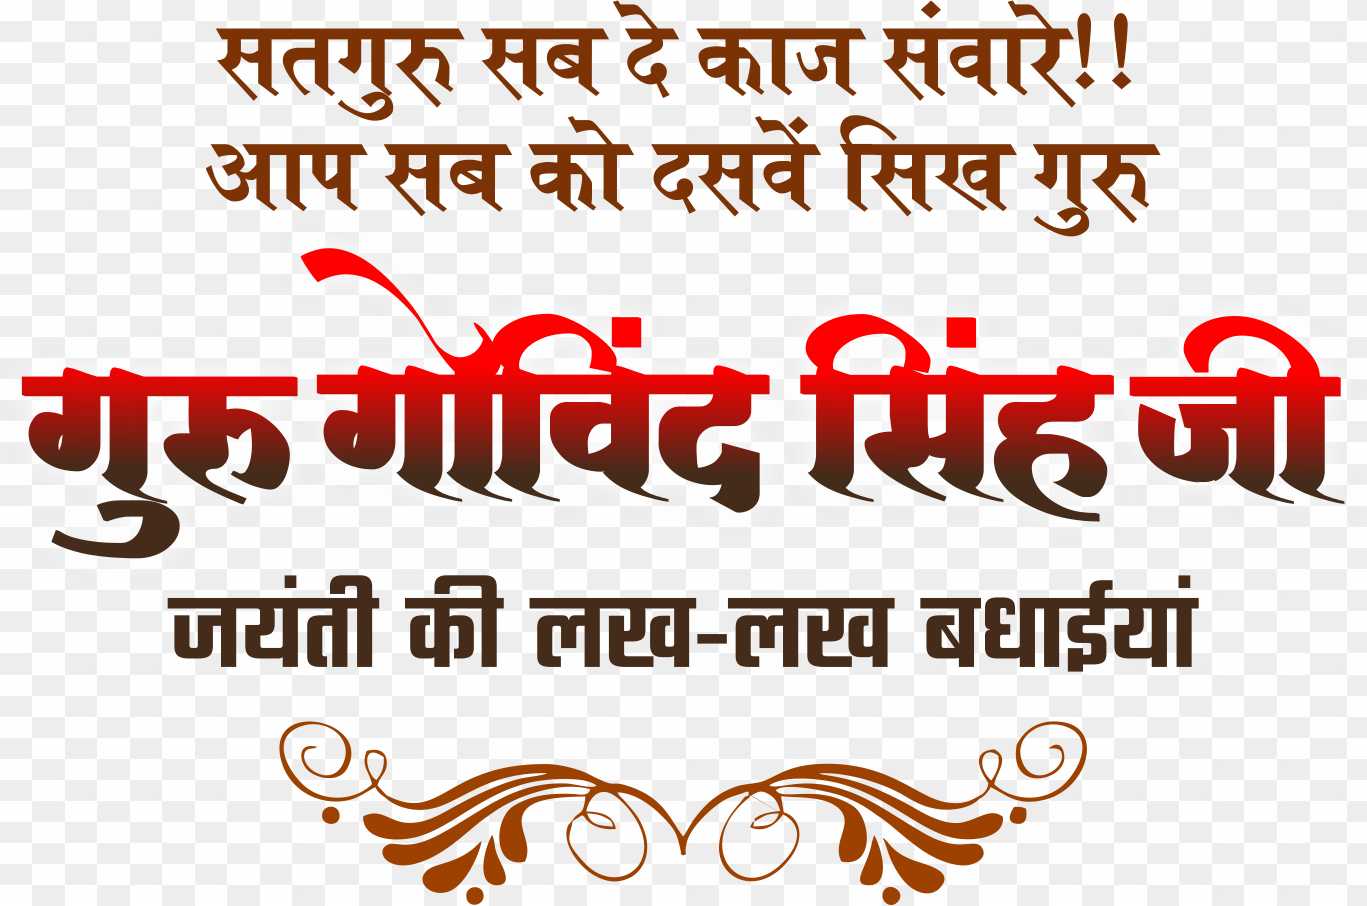 Guru Govind Singh jayanti poster designing PNG download